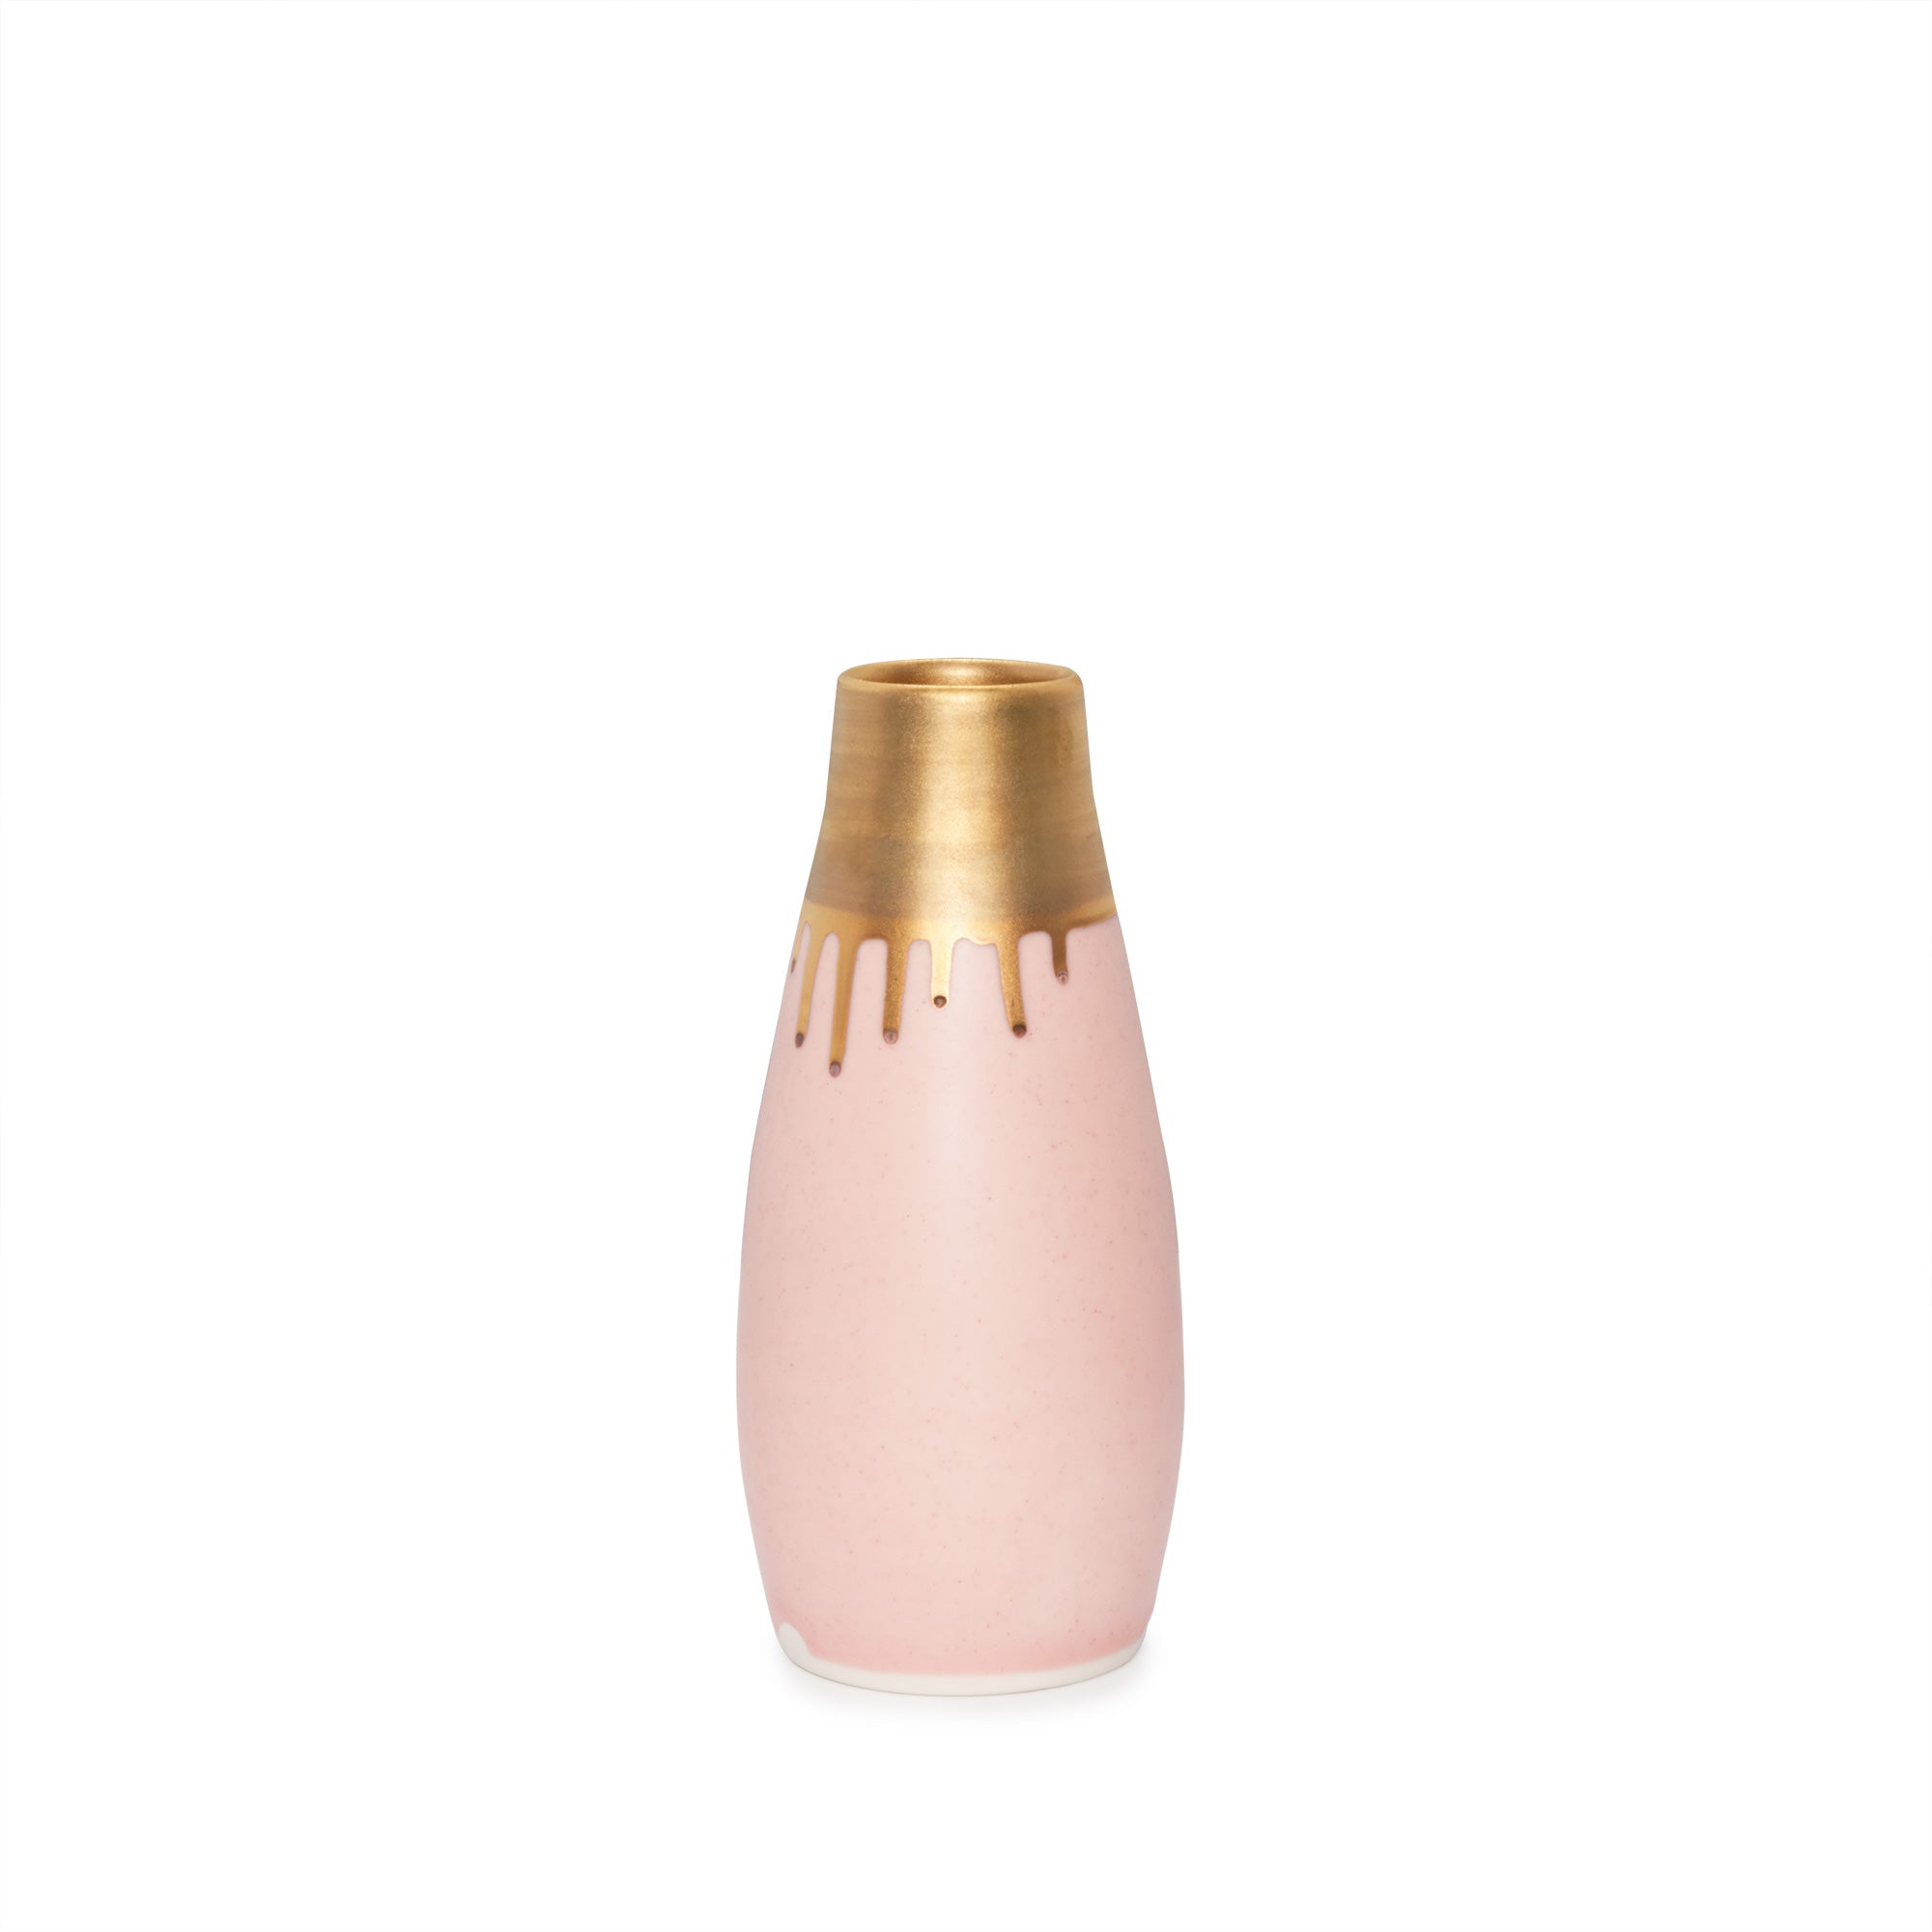 Gramercy Milk Vase - Ltd. Edition Matte Pink & Gold